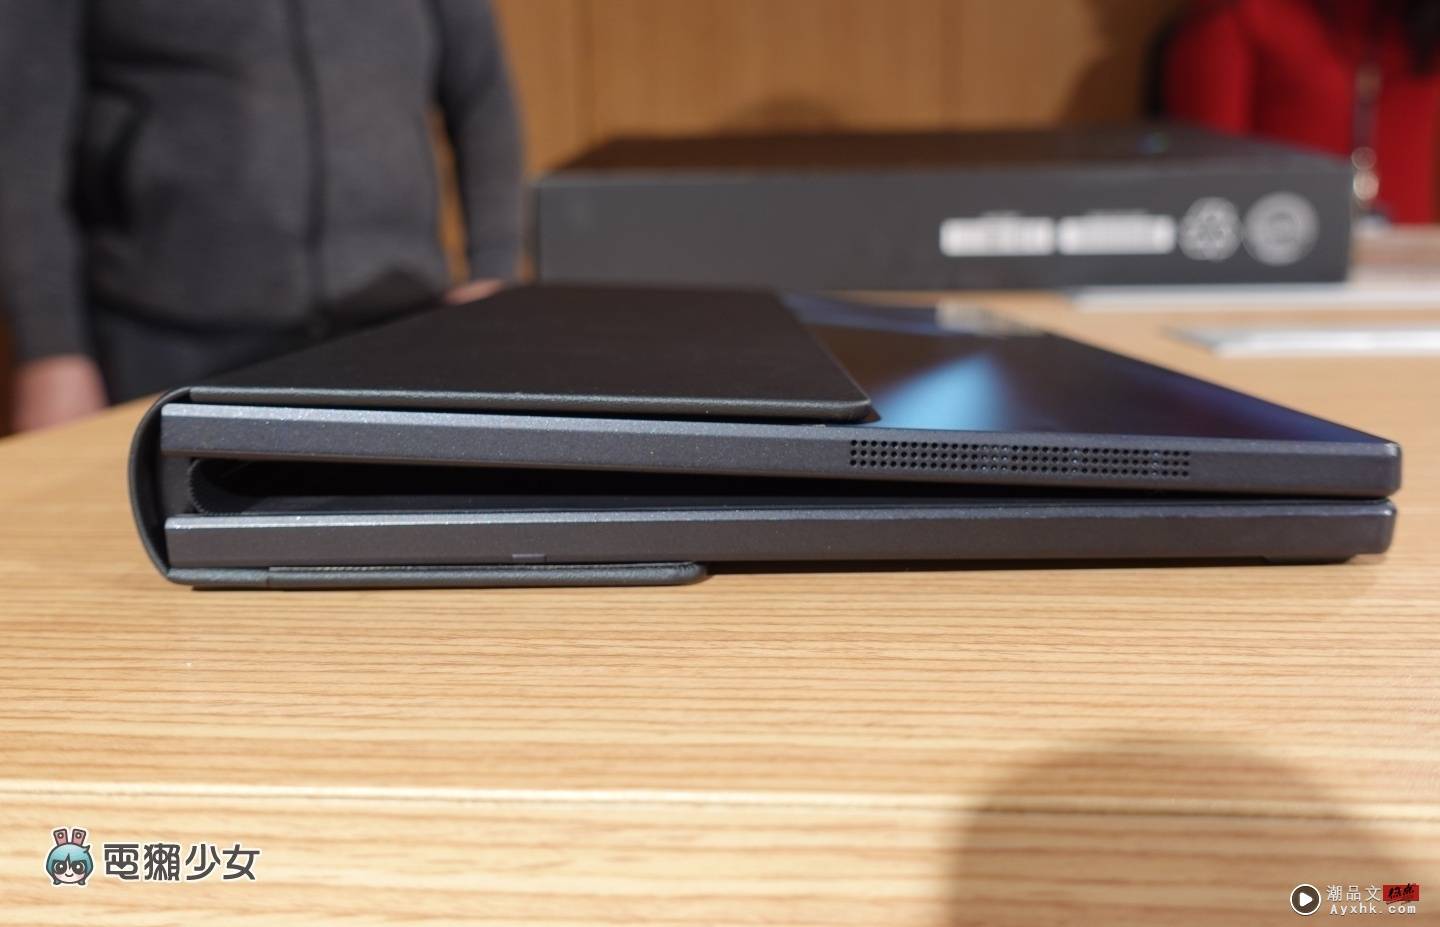 折叠手机不够看！华硕发表 17 吋折叠式笔电‘ Zenbook 17 Fold OLED ’ 数码科技 图4张